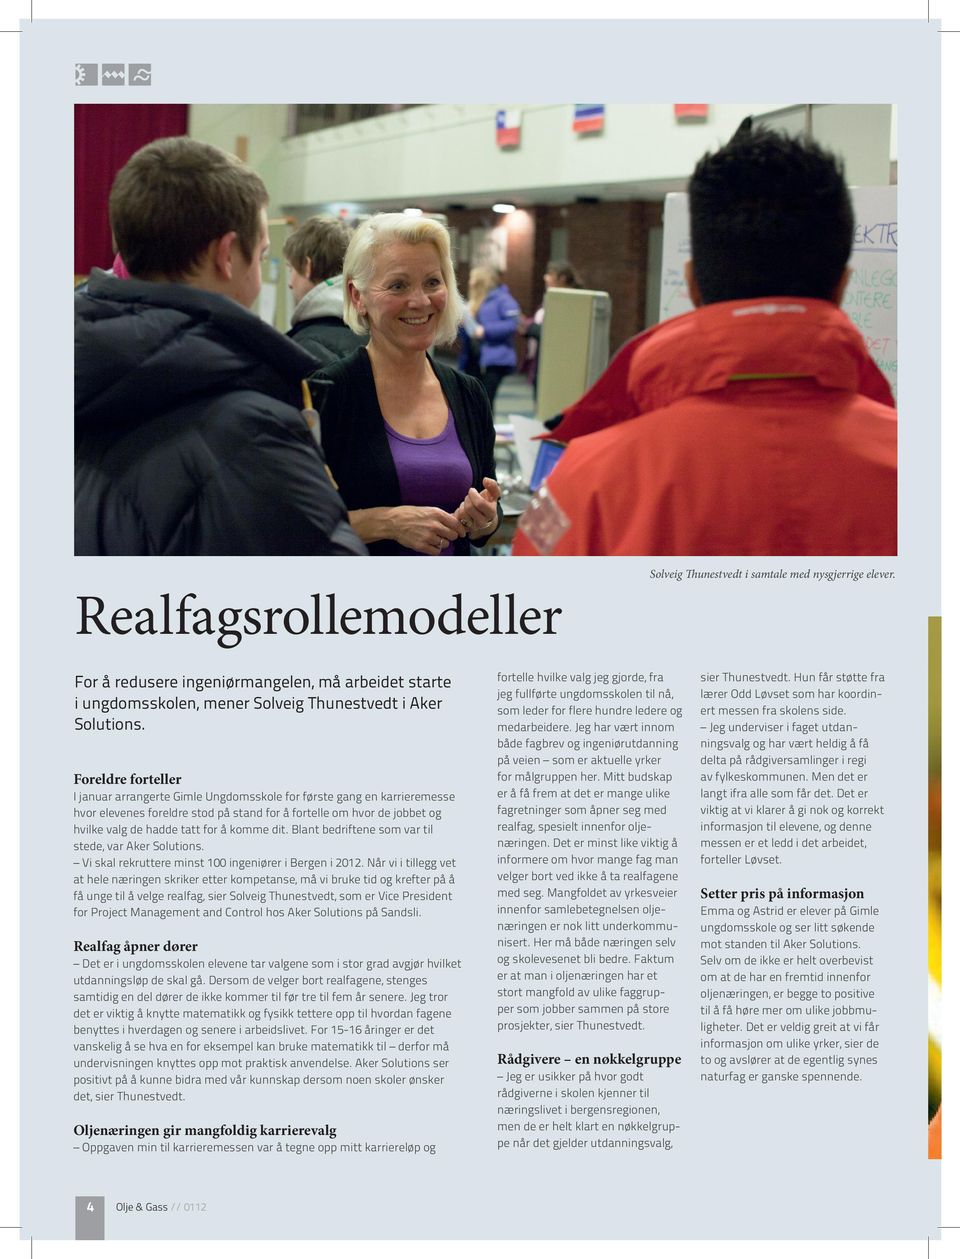 komme dit. Blant bedriftene som var til stede, var Aker Solutions. Vi skal rekruttere minst 100 ingeniører i Bergen i 2012.